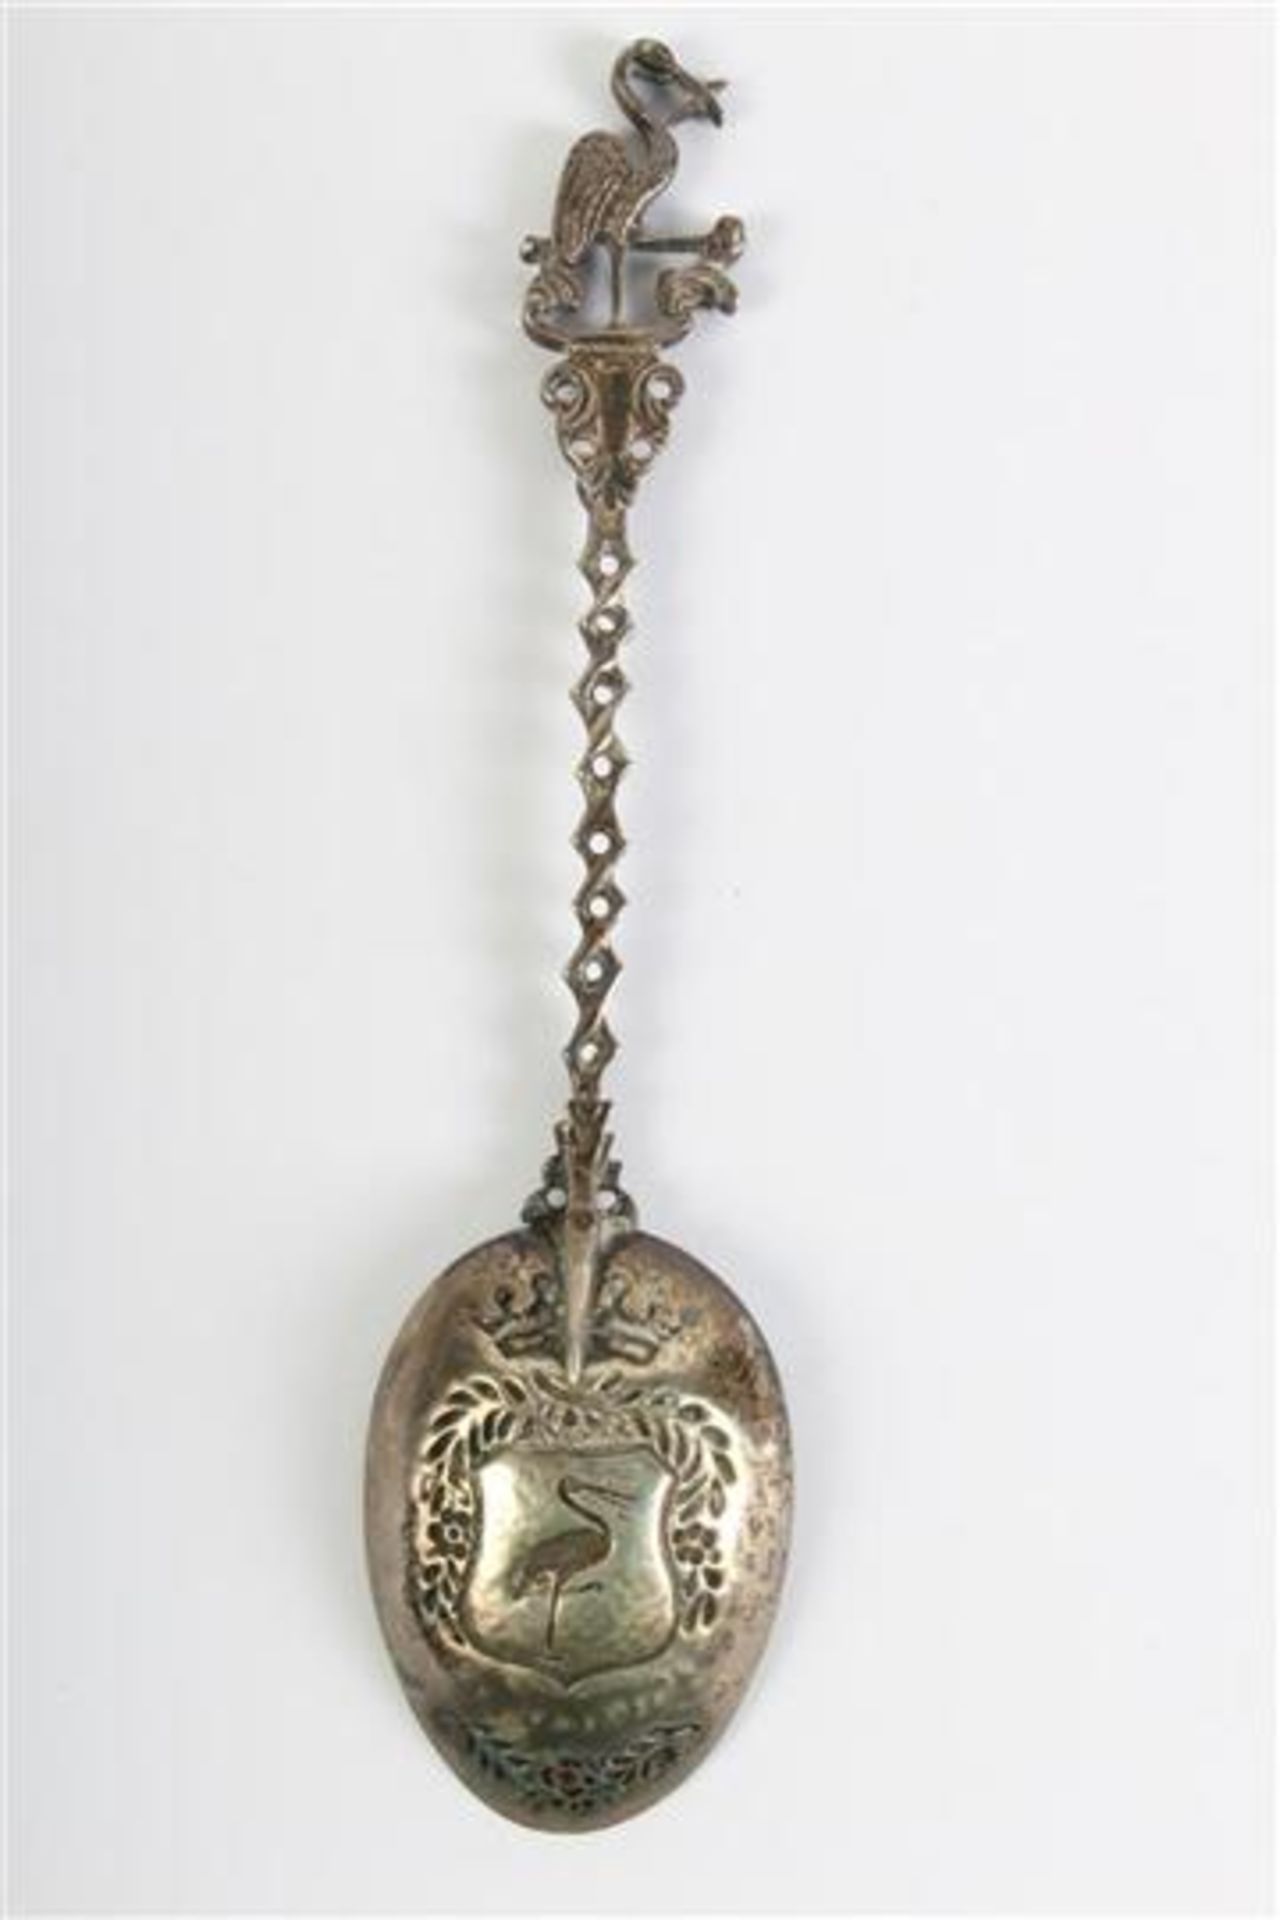 Zilveren geboortelepel 's Gravenhage', Hollands gekeurd. L: 18 cm. - Bild 3 aus 3